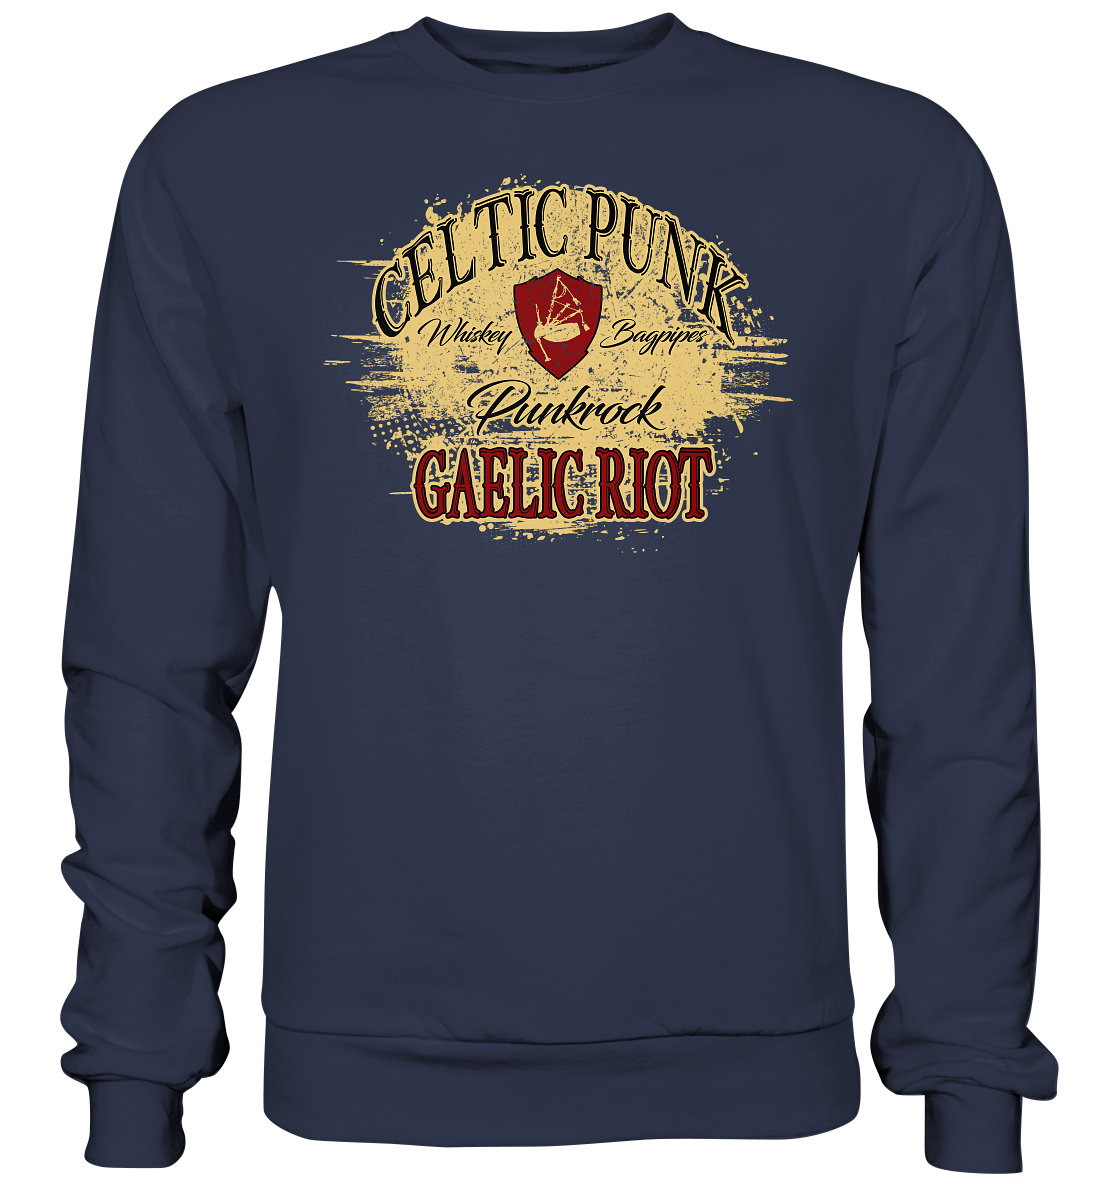 Celtic Punk "Gaelic Riot" - Premium Sweatshirt